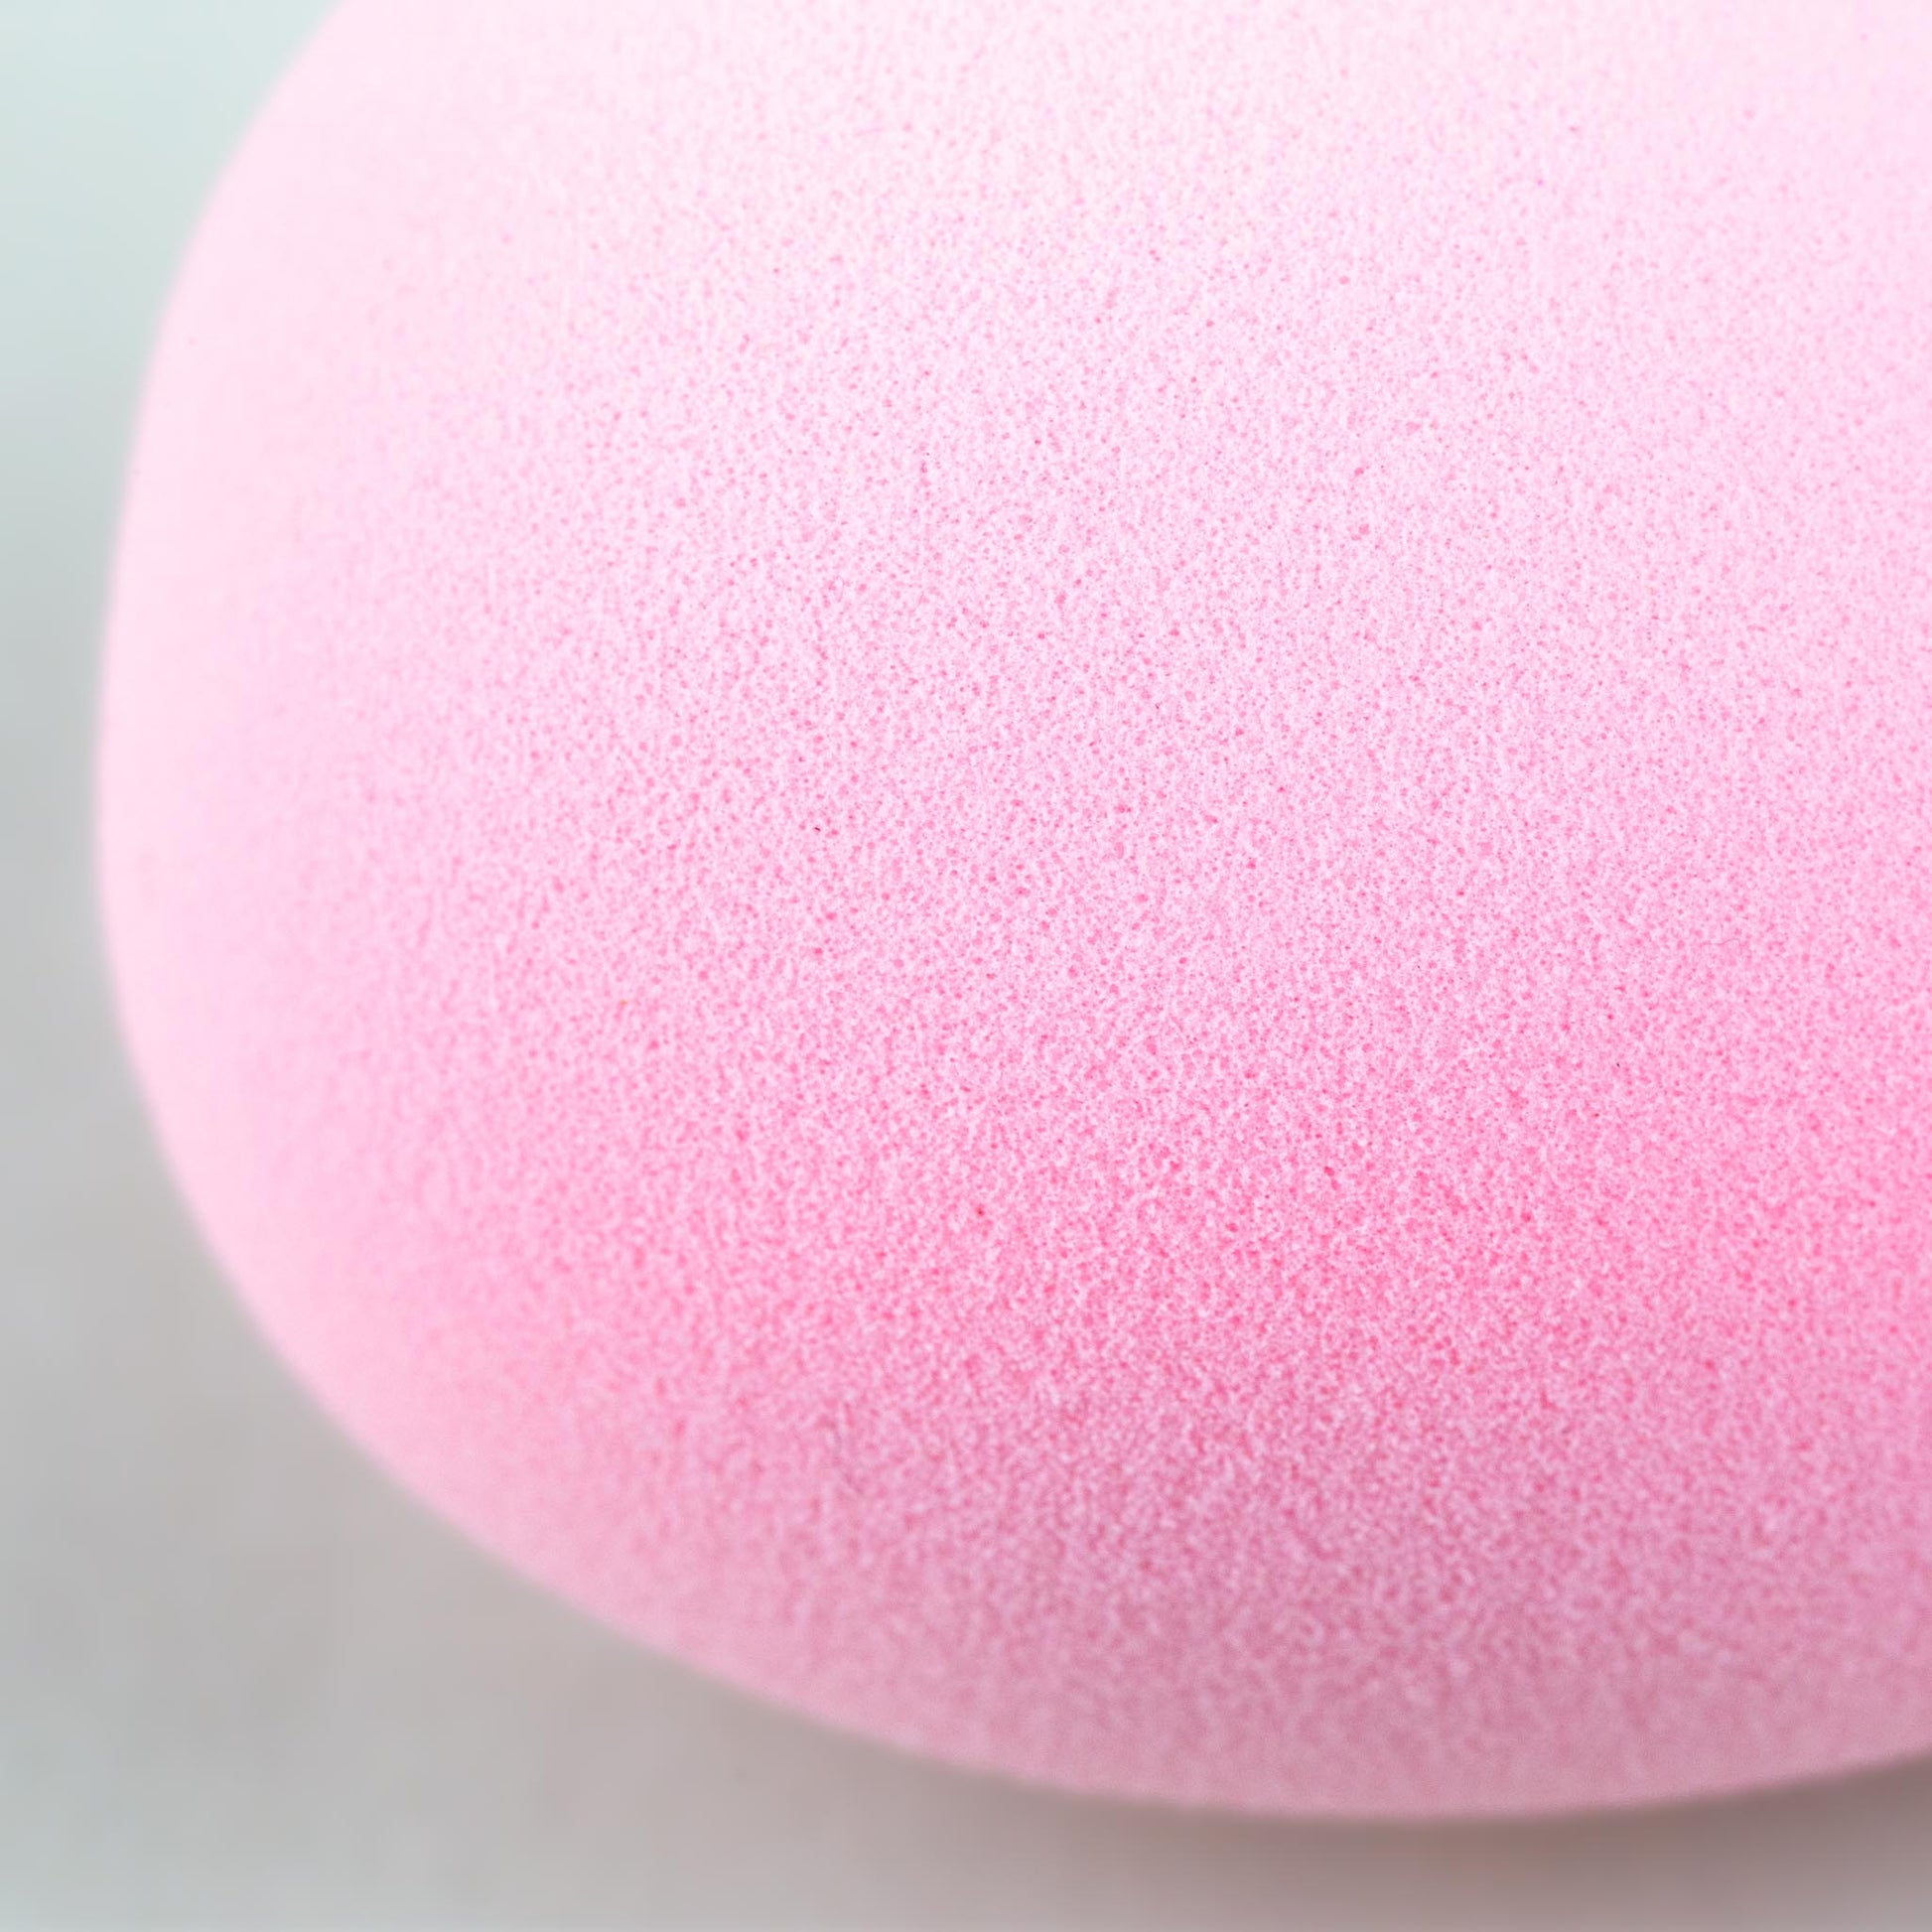 Burete machiaj Egg, 6 cm - Roz